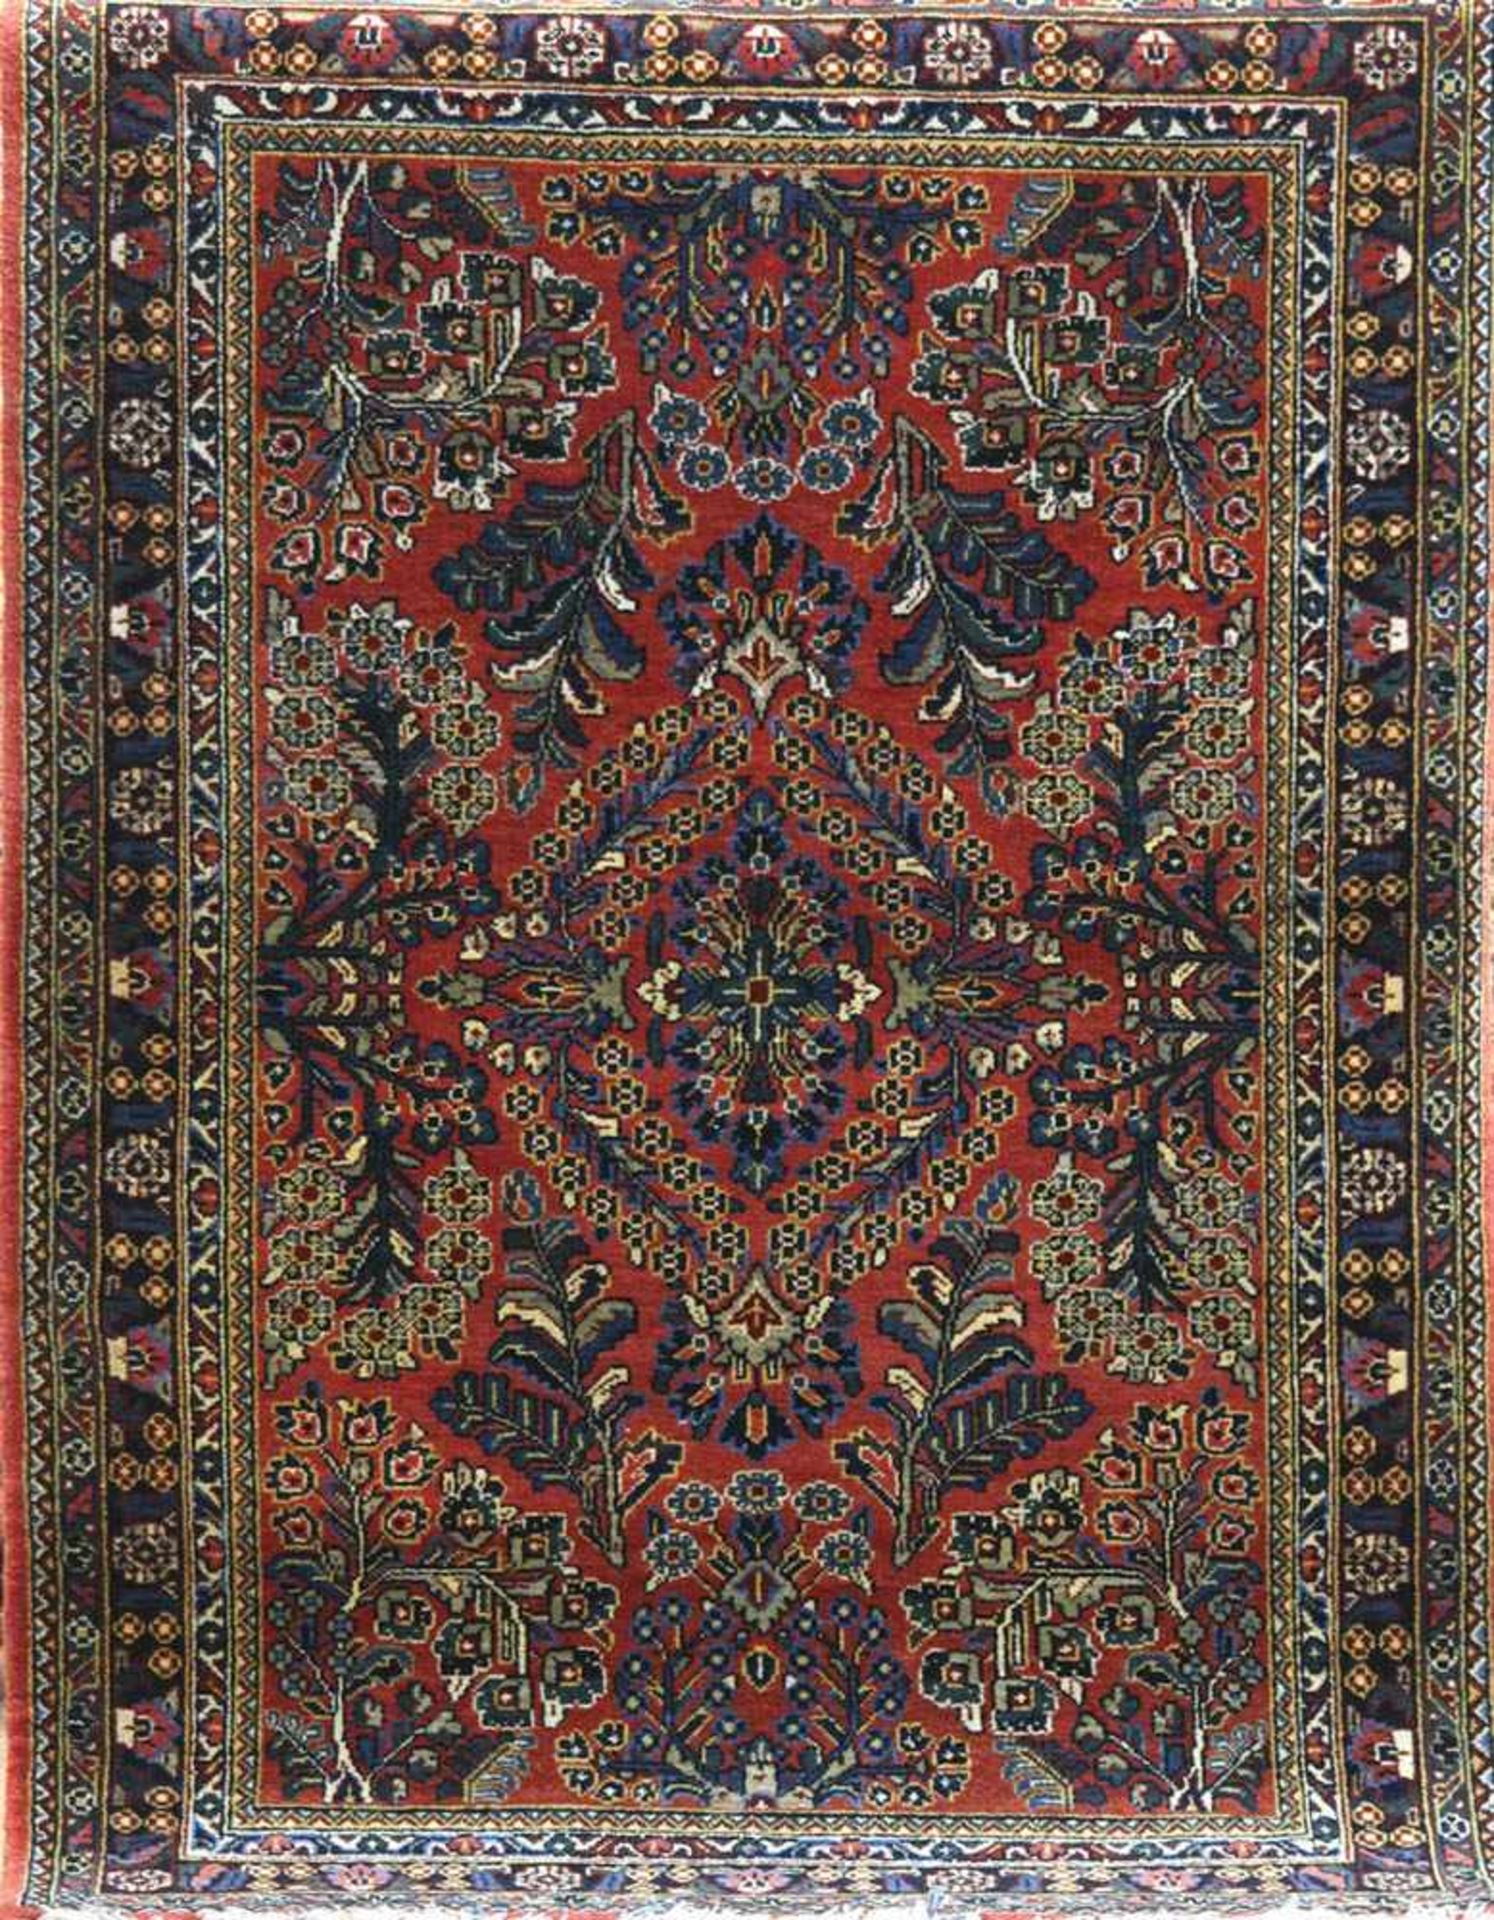 Alter Sarok, Persien, rot-/blaugrundig, mit zentralem Medaillon und floralen Motiven,Fransen